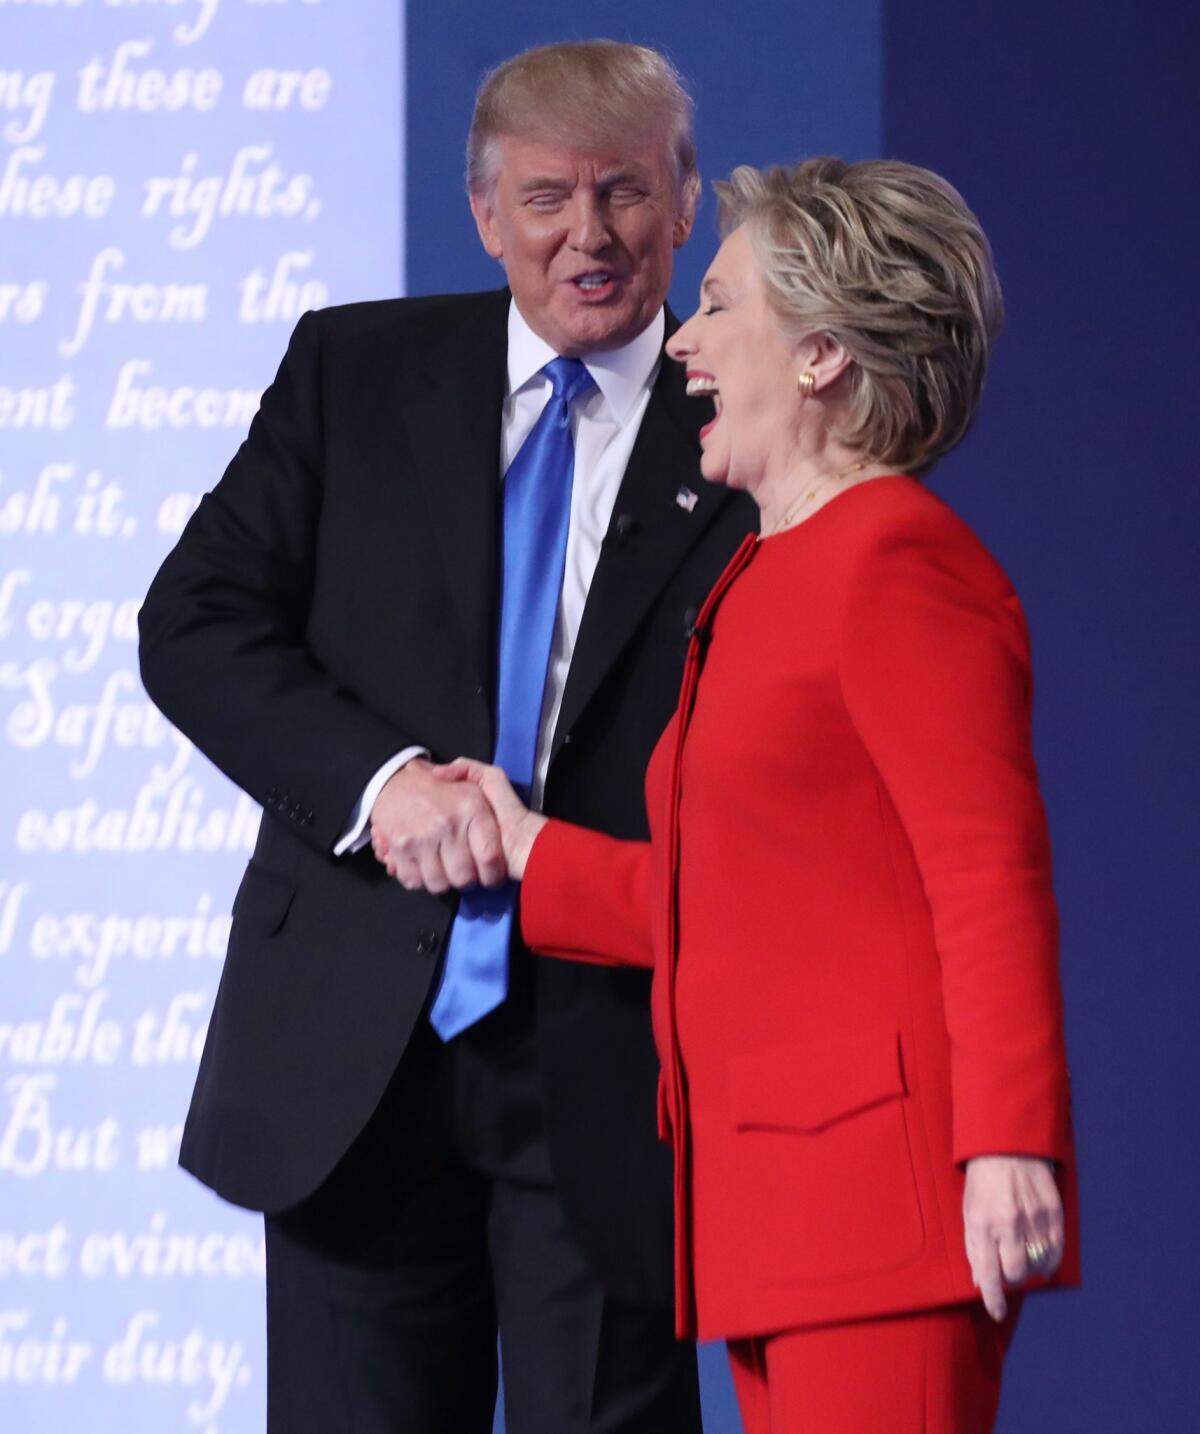 El candidato republicano a la presidencia de Estados Unidos Donald Trump (i) y su rival demócrata Hillary Clinton (d) se dan la mano tras su primer debate hoy, lunes 26 de septiembre de 2016, en la Universidad Hosfra de Hempstead, Nueva York (EE.UU.). EFE/ANDREW GOMBERT